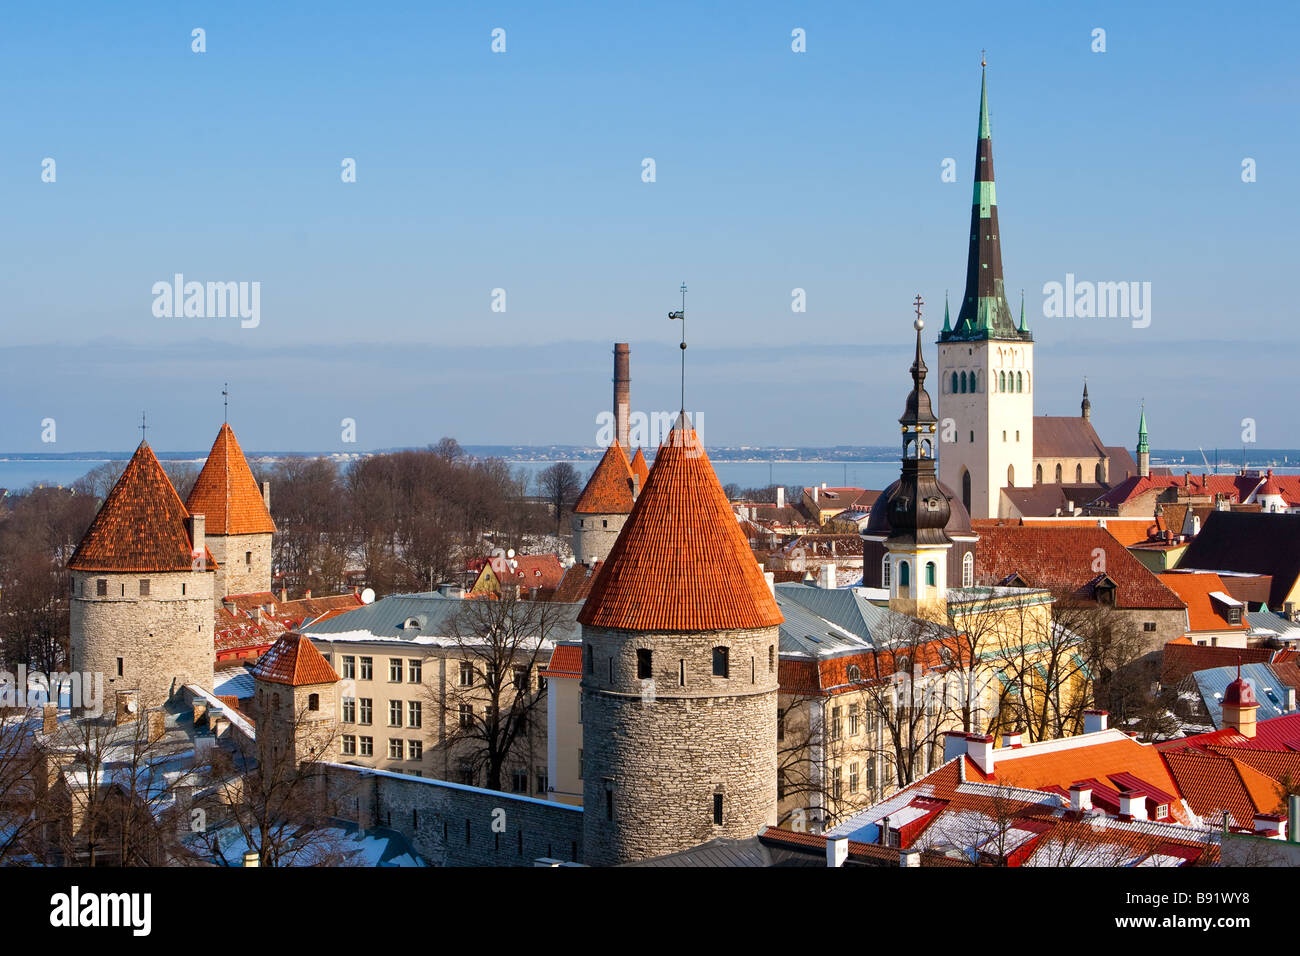 Tallinn. Old city Stock Photo